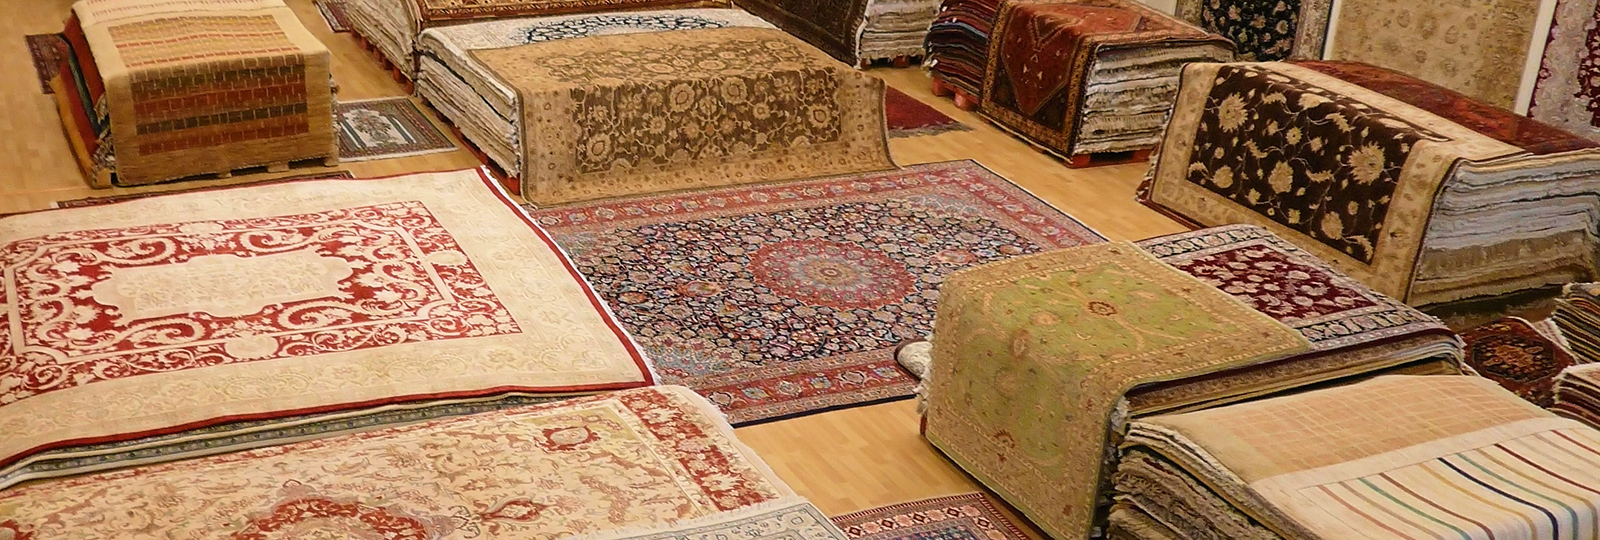 tienda de alfombras baratas en madrid